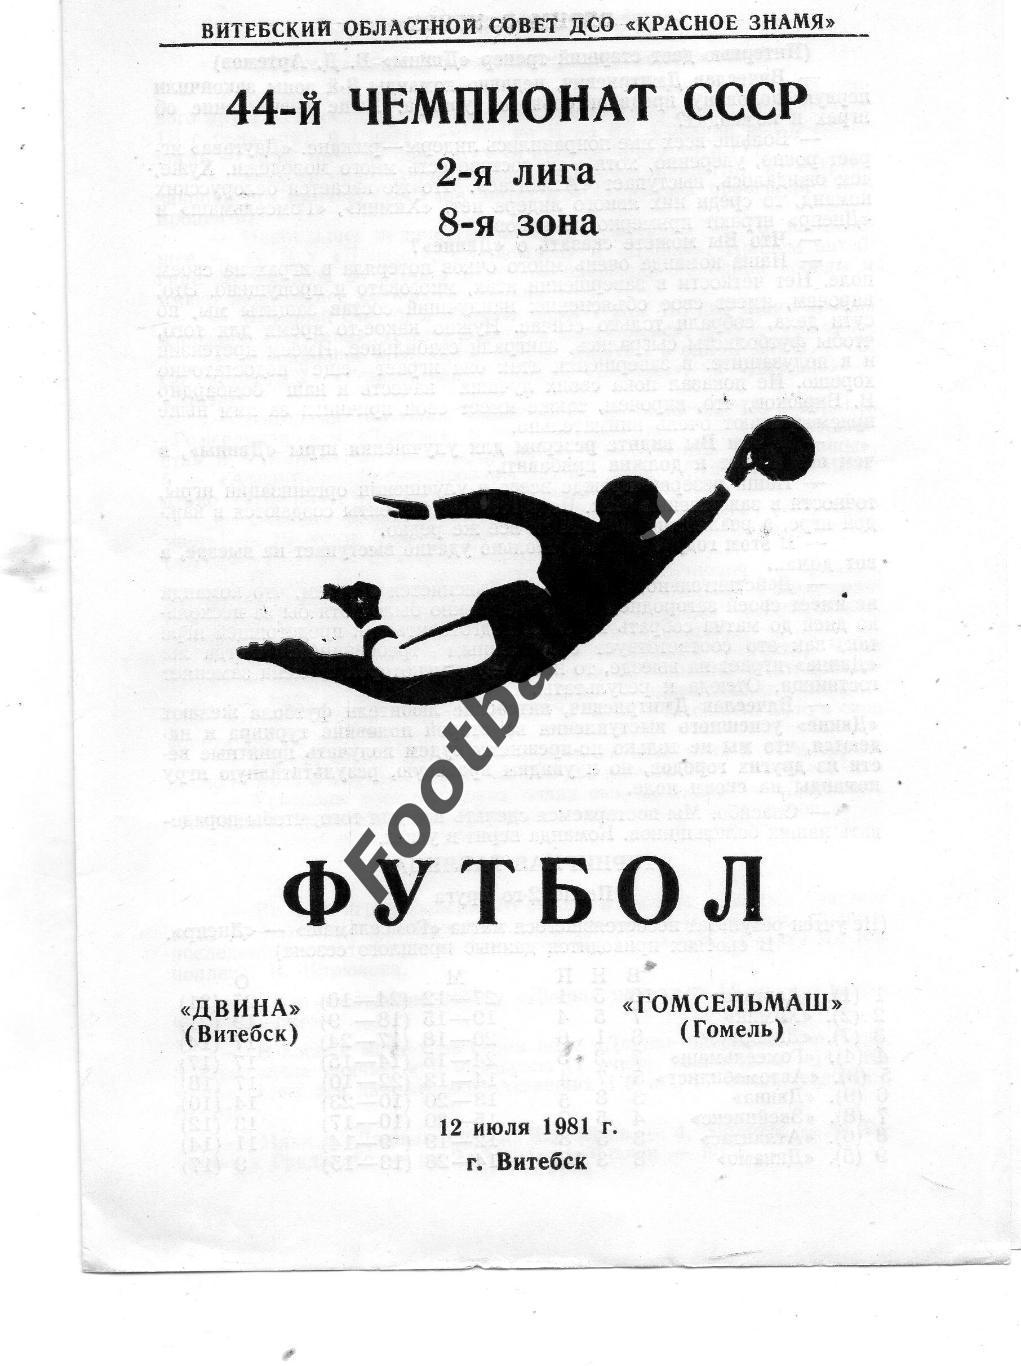 Двина Витебск - Гомсельмаш Гомель 12.07.1981